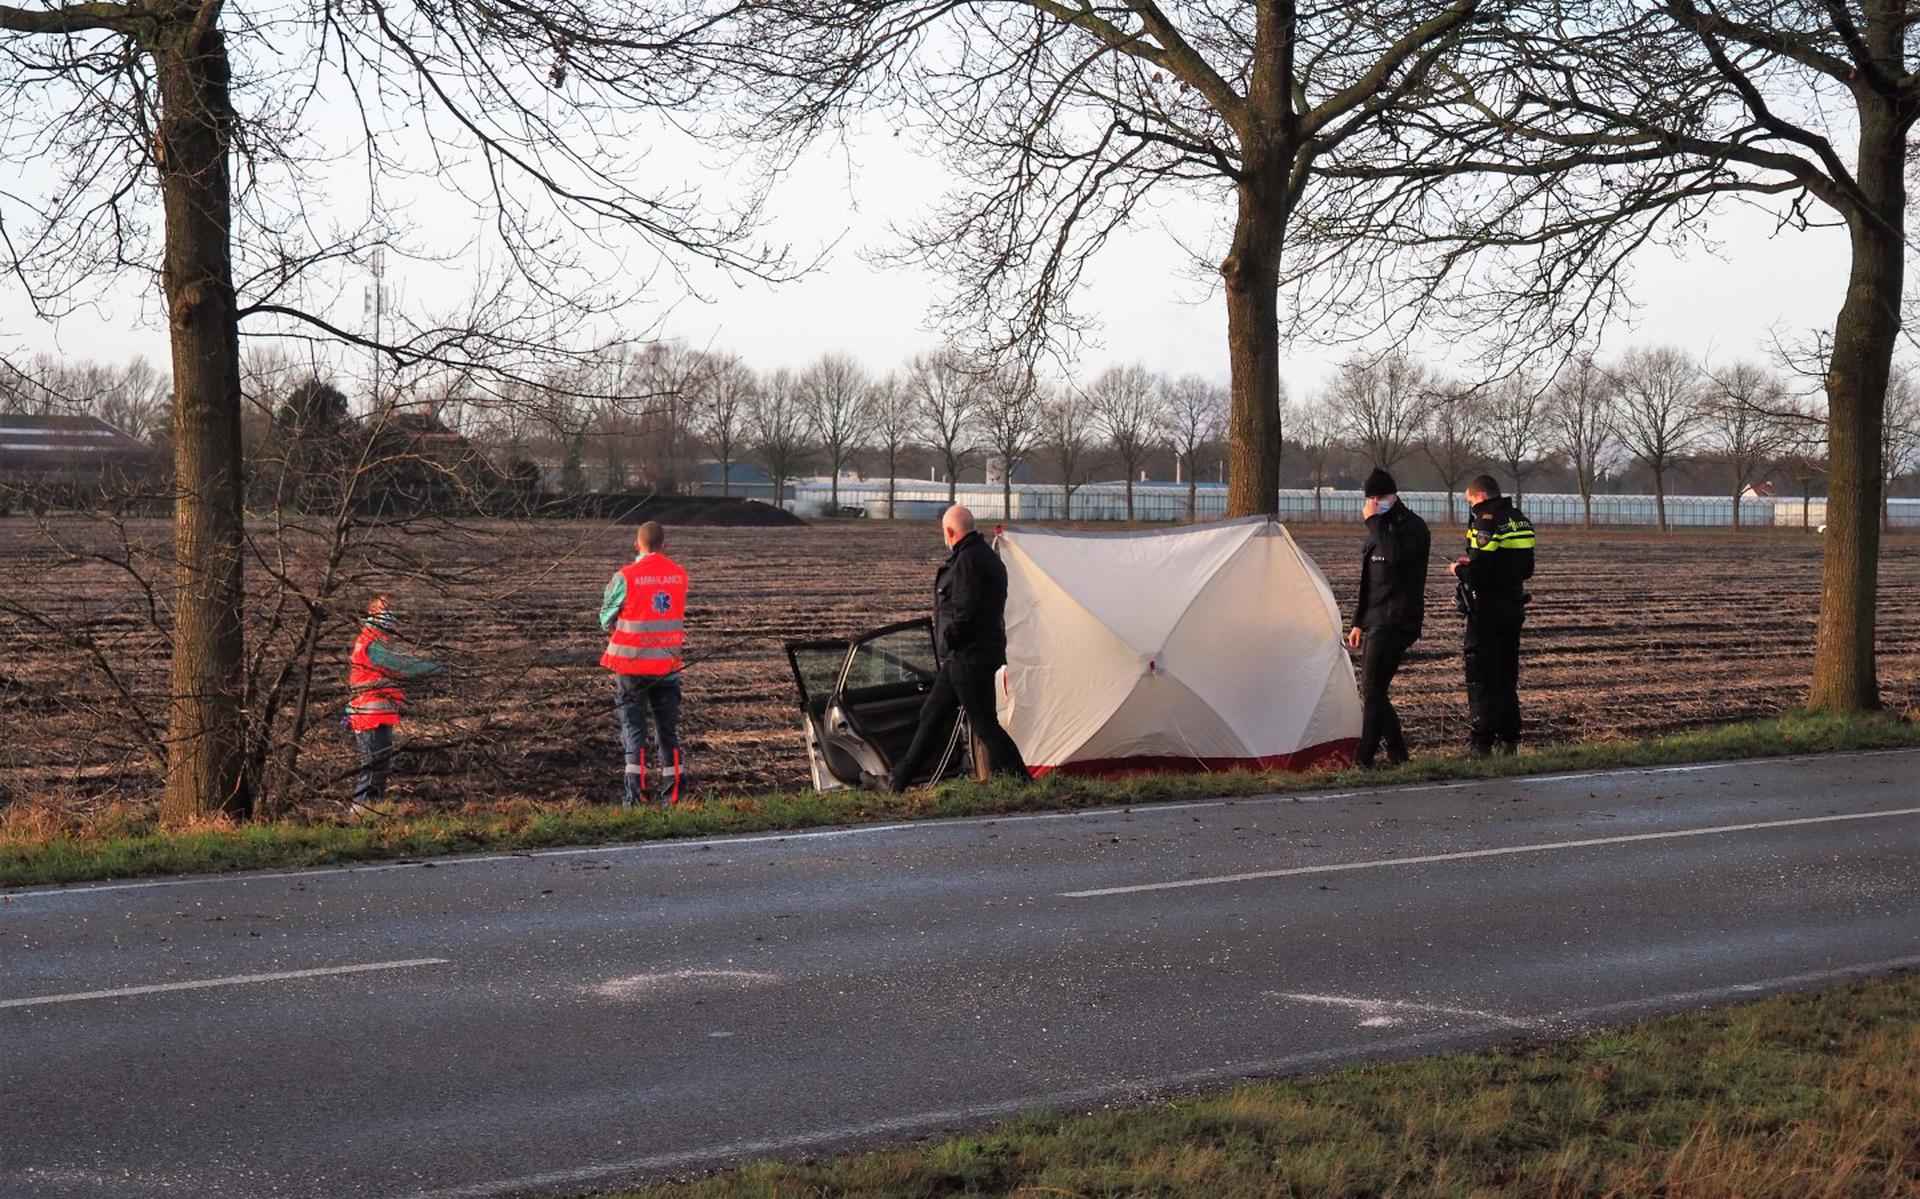 Vrouw (78) uit Emmen komt om leven door auto-ongeluk in Barger-Compascuum. Man (79) gewond naar ziekenhuis - van het